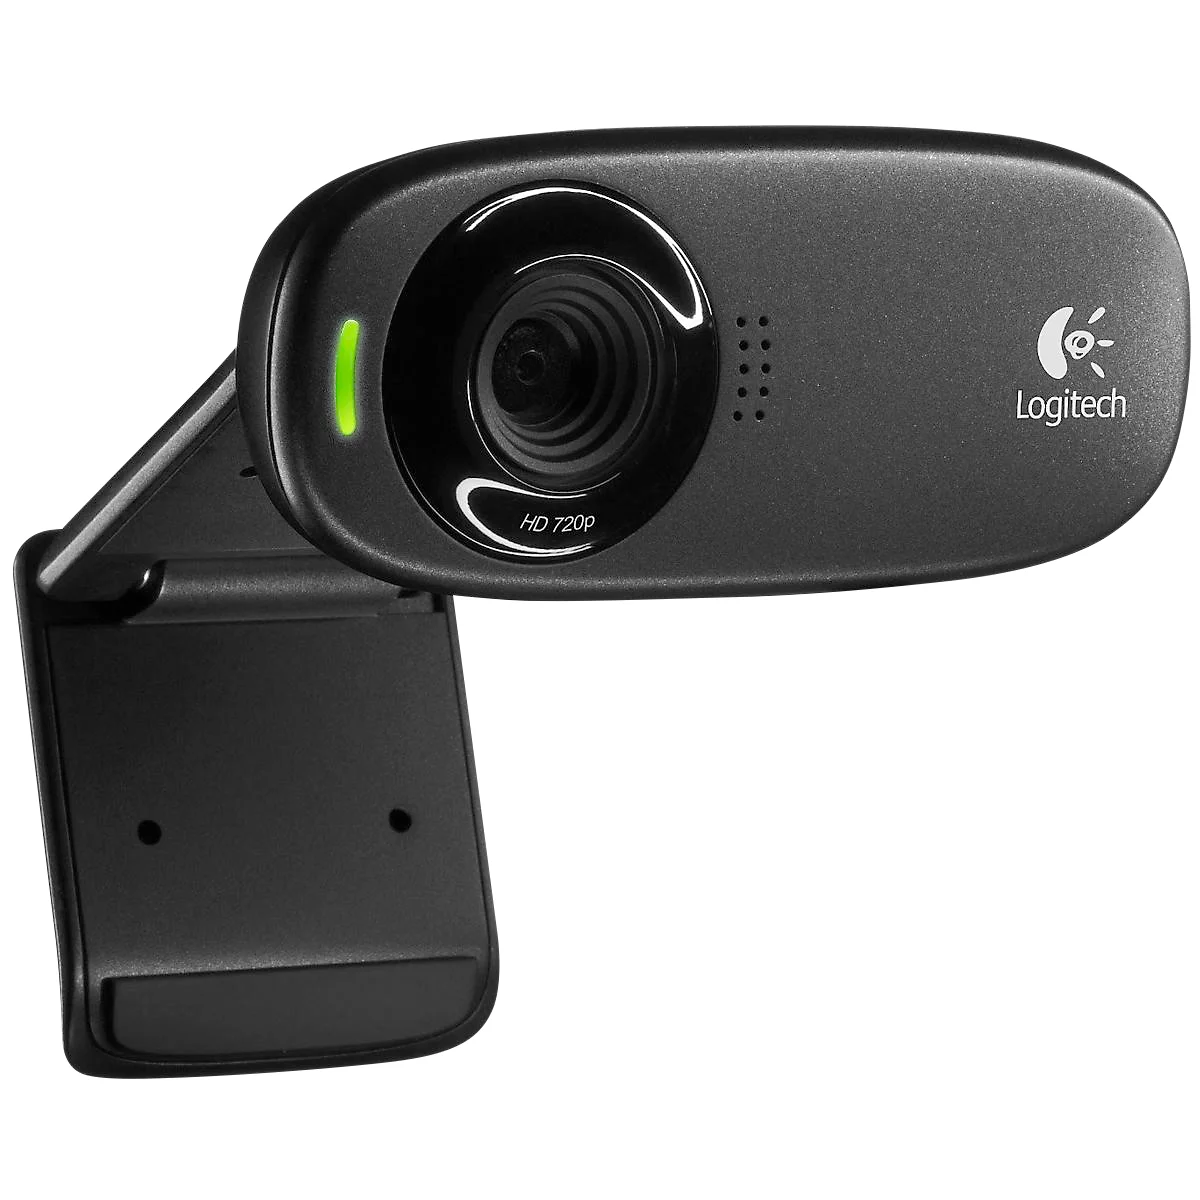 Logitech® Webcam C310, HD-Video 1280 x 720 px, Foto 5 MP, Mikrofon, Geräusch- & Lichtfilter, 1-Klick-HD-Upload, USB 2.0, Universalhalterung, USB-Kabel